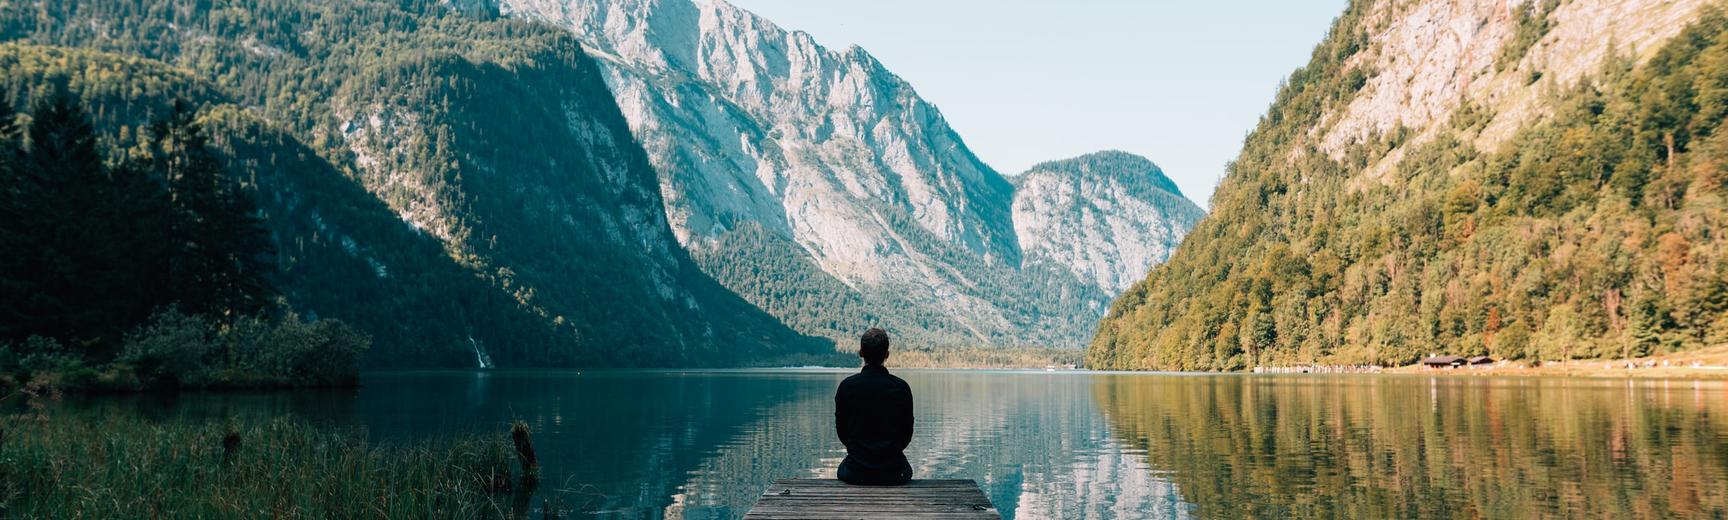 Mindfulness of man sitting by a lake